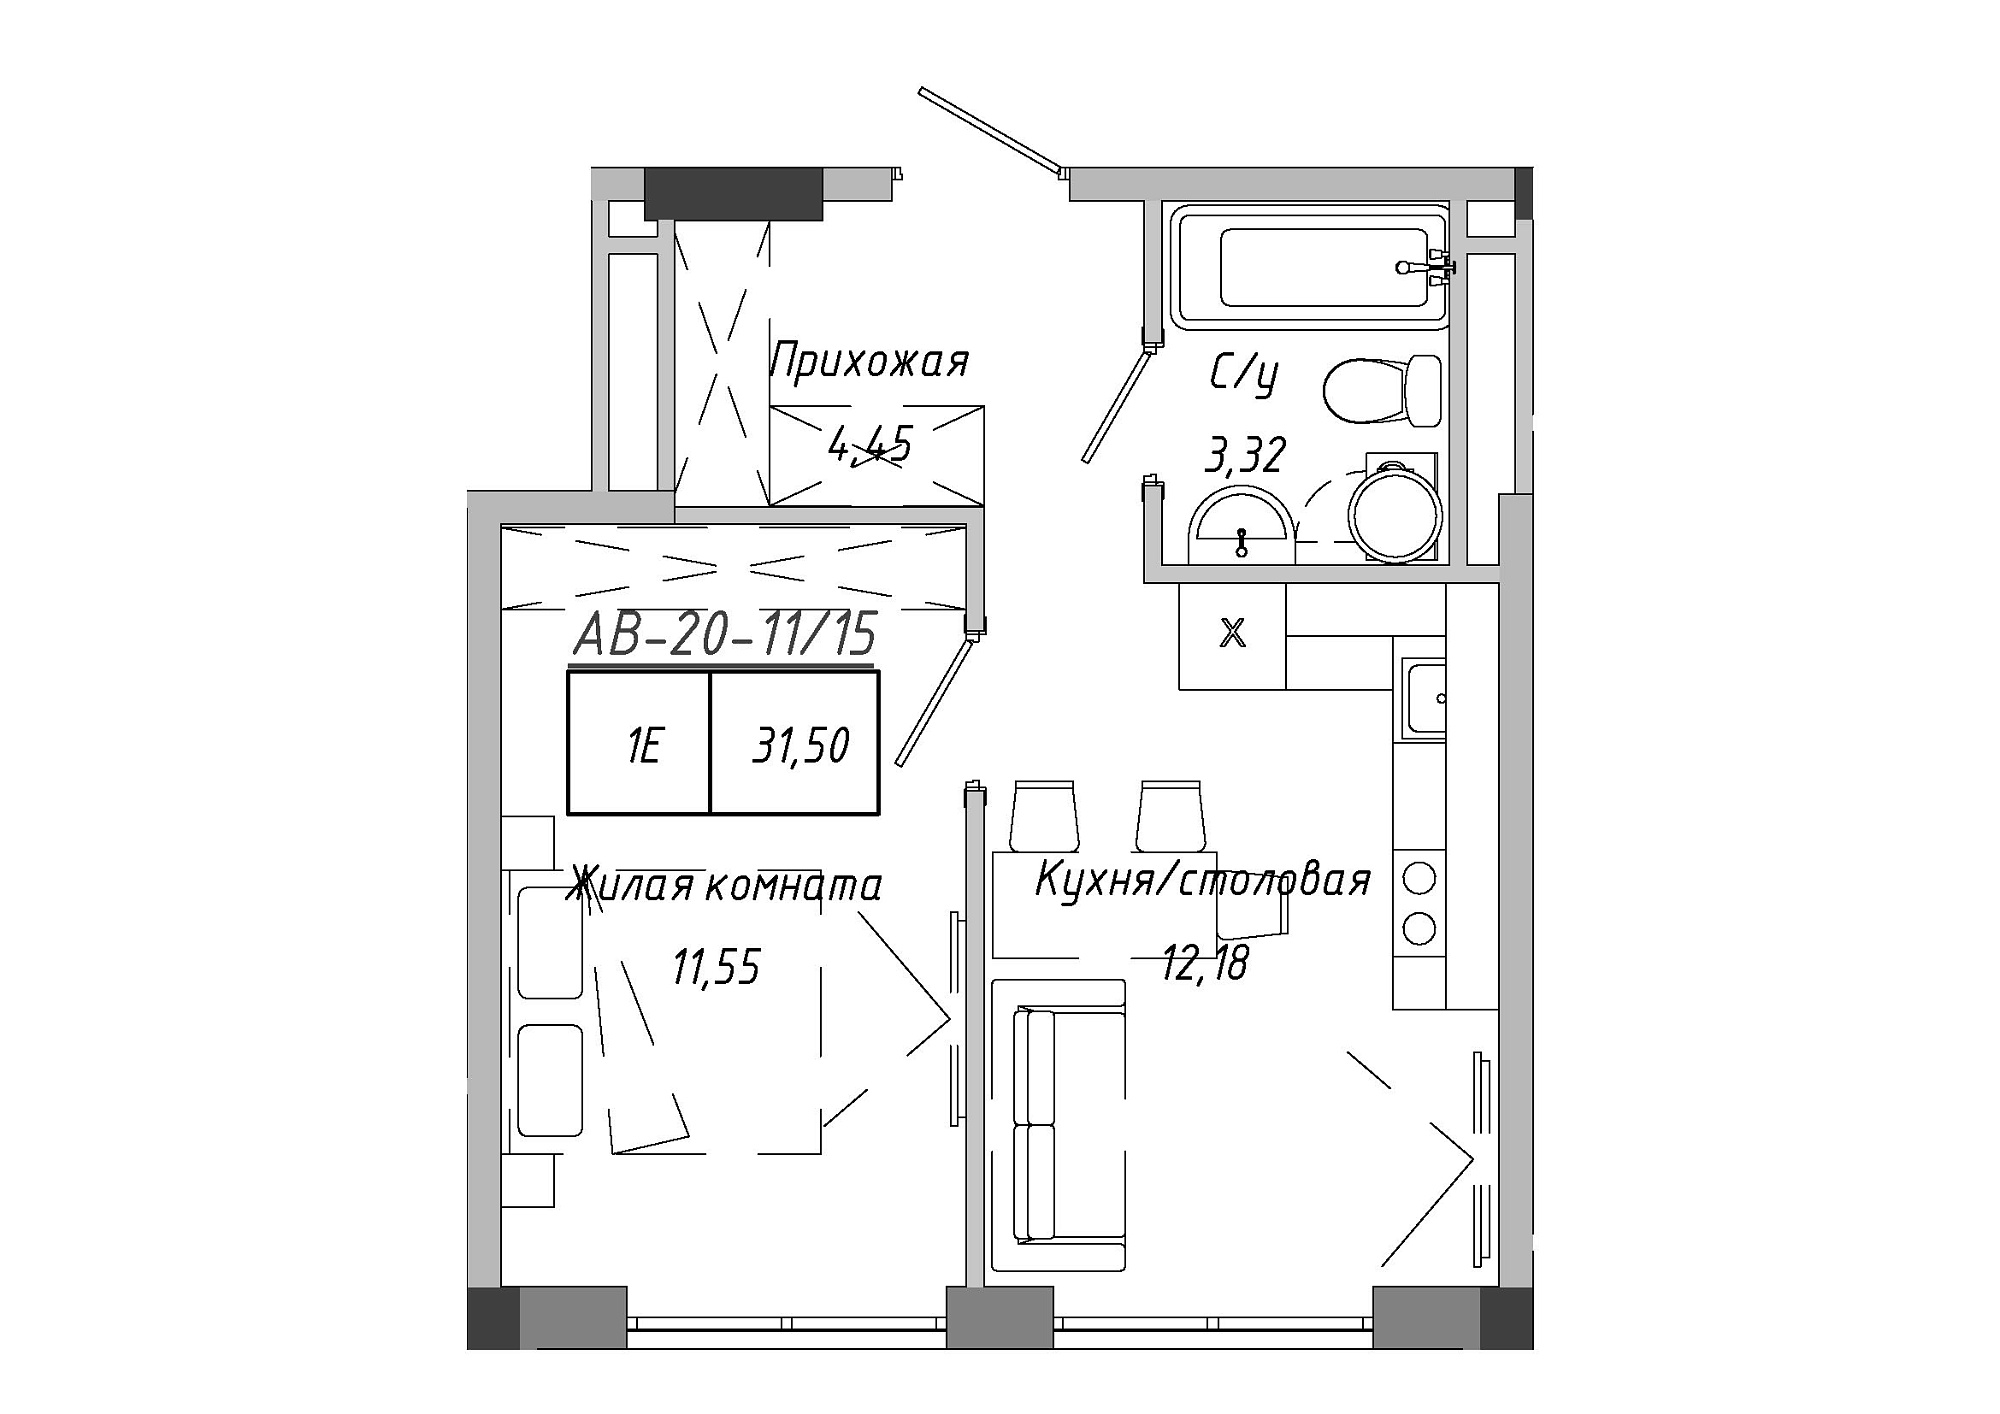 Планировка 1-к квартира площей 31.51м2, AB-20-11/00015.